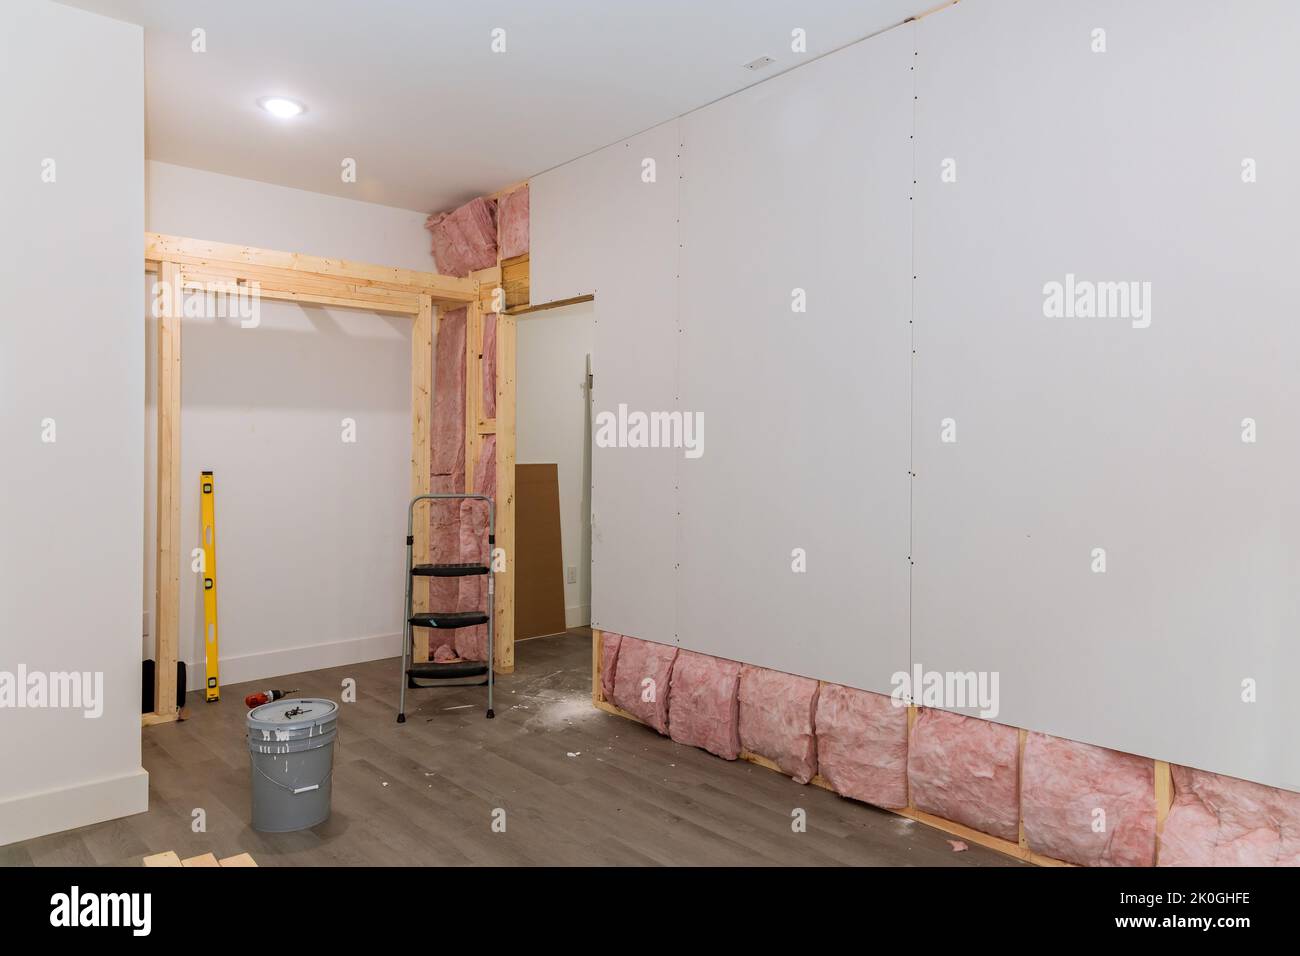 Dopo aver installato l'isolamento termico e acustico per una nuova casa, il muro a secco viene avvitato alle pareti sulla cornice delle travi Foto Stock